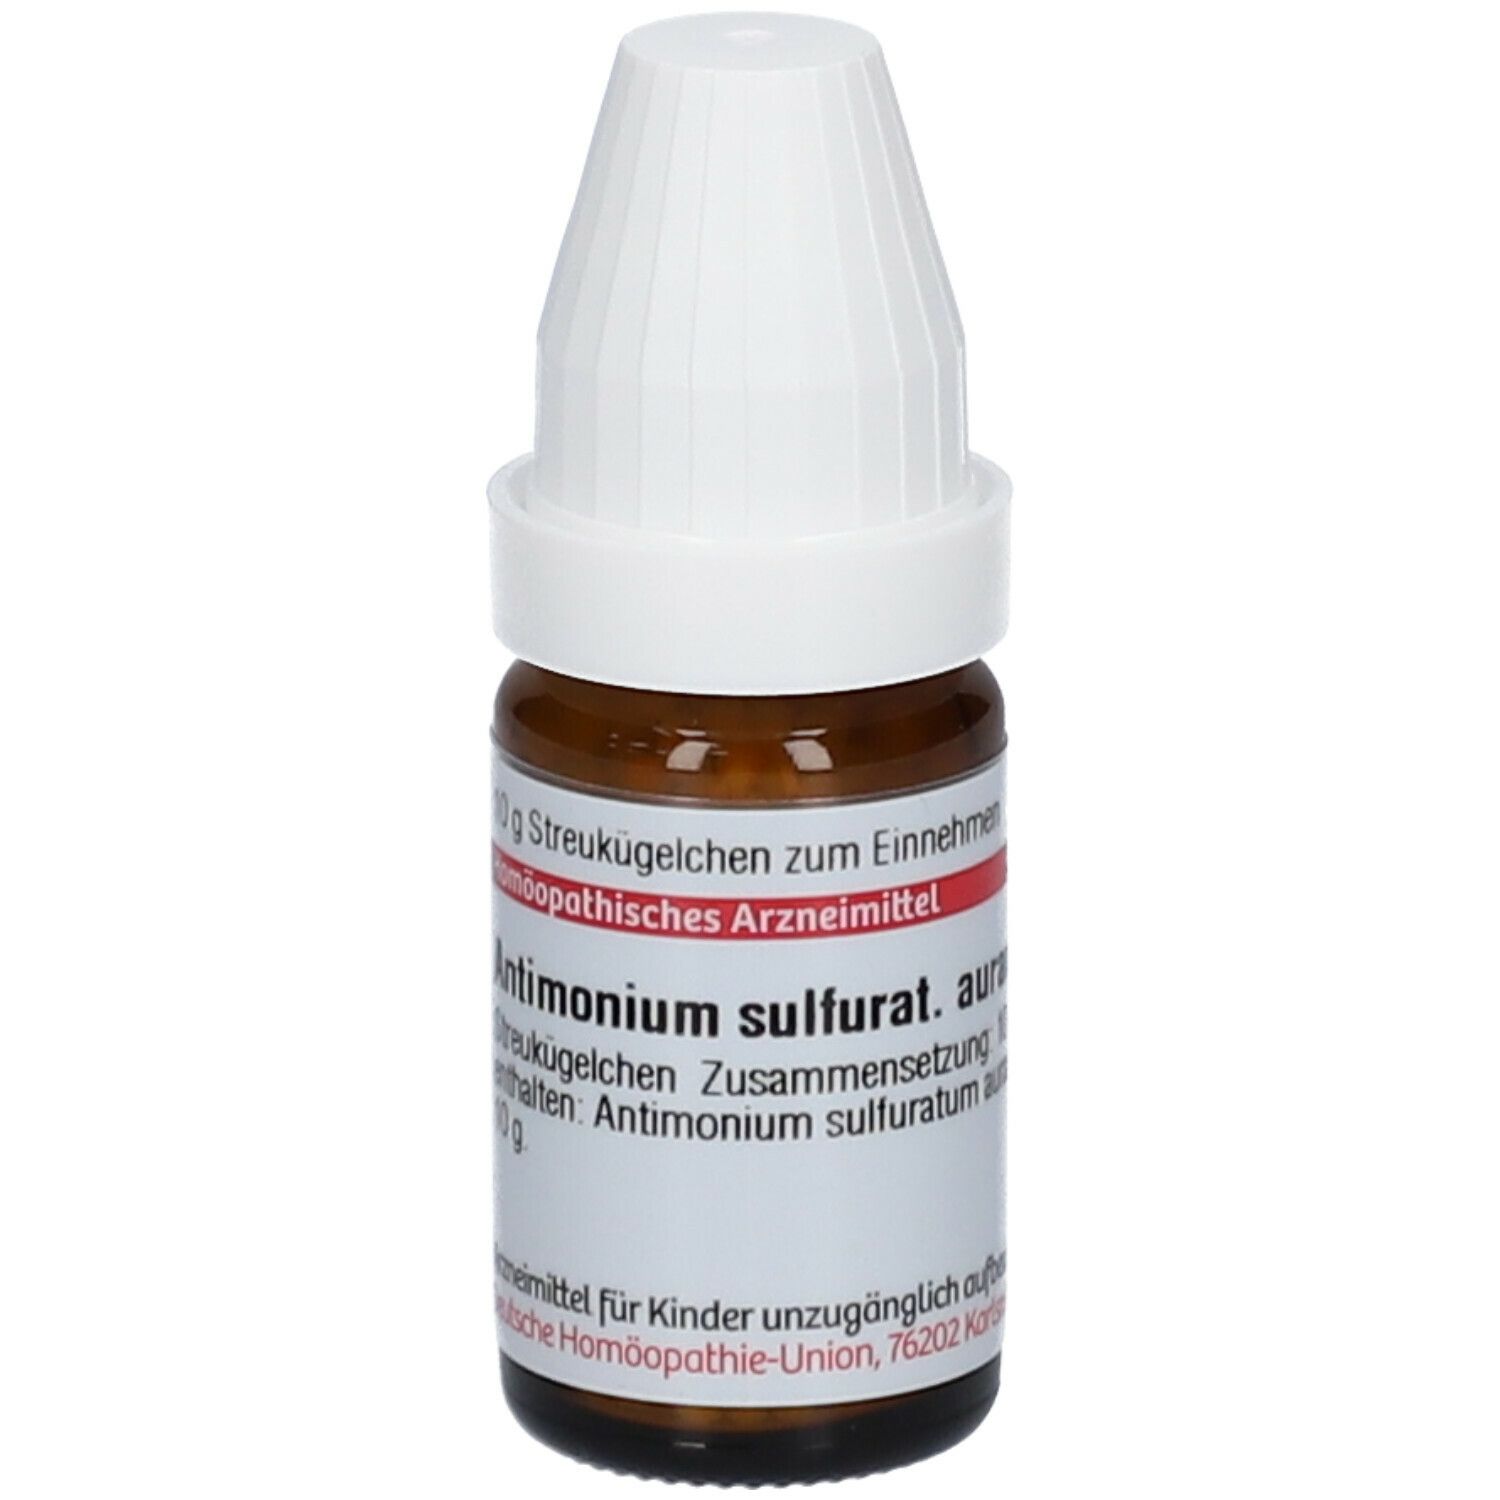 DHU Antimonium Sulfuratum Aurantiacum C200